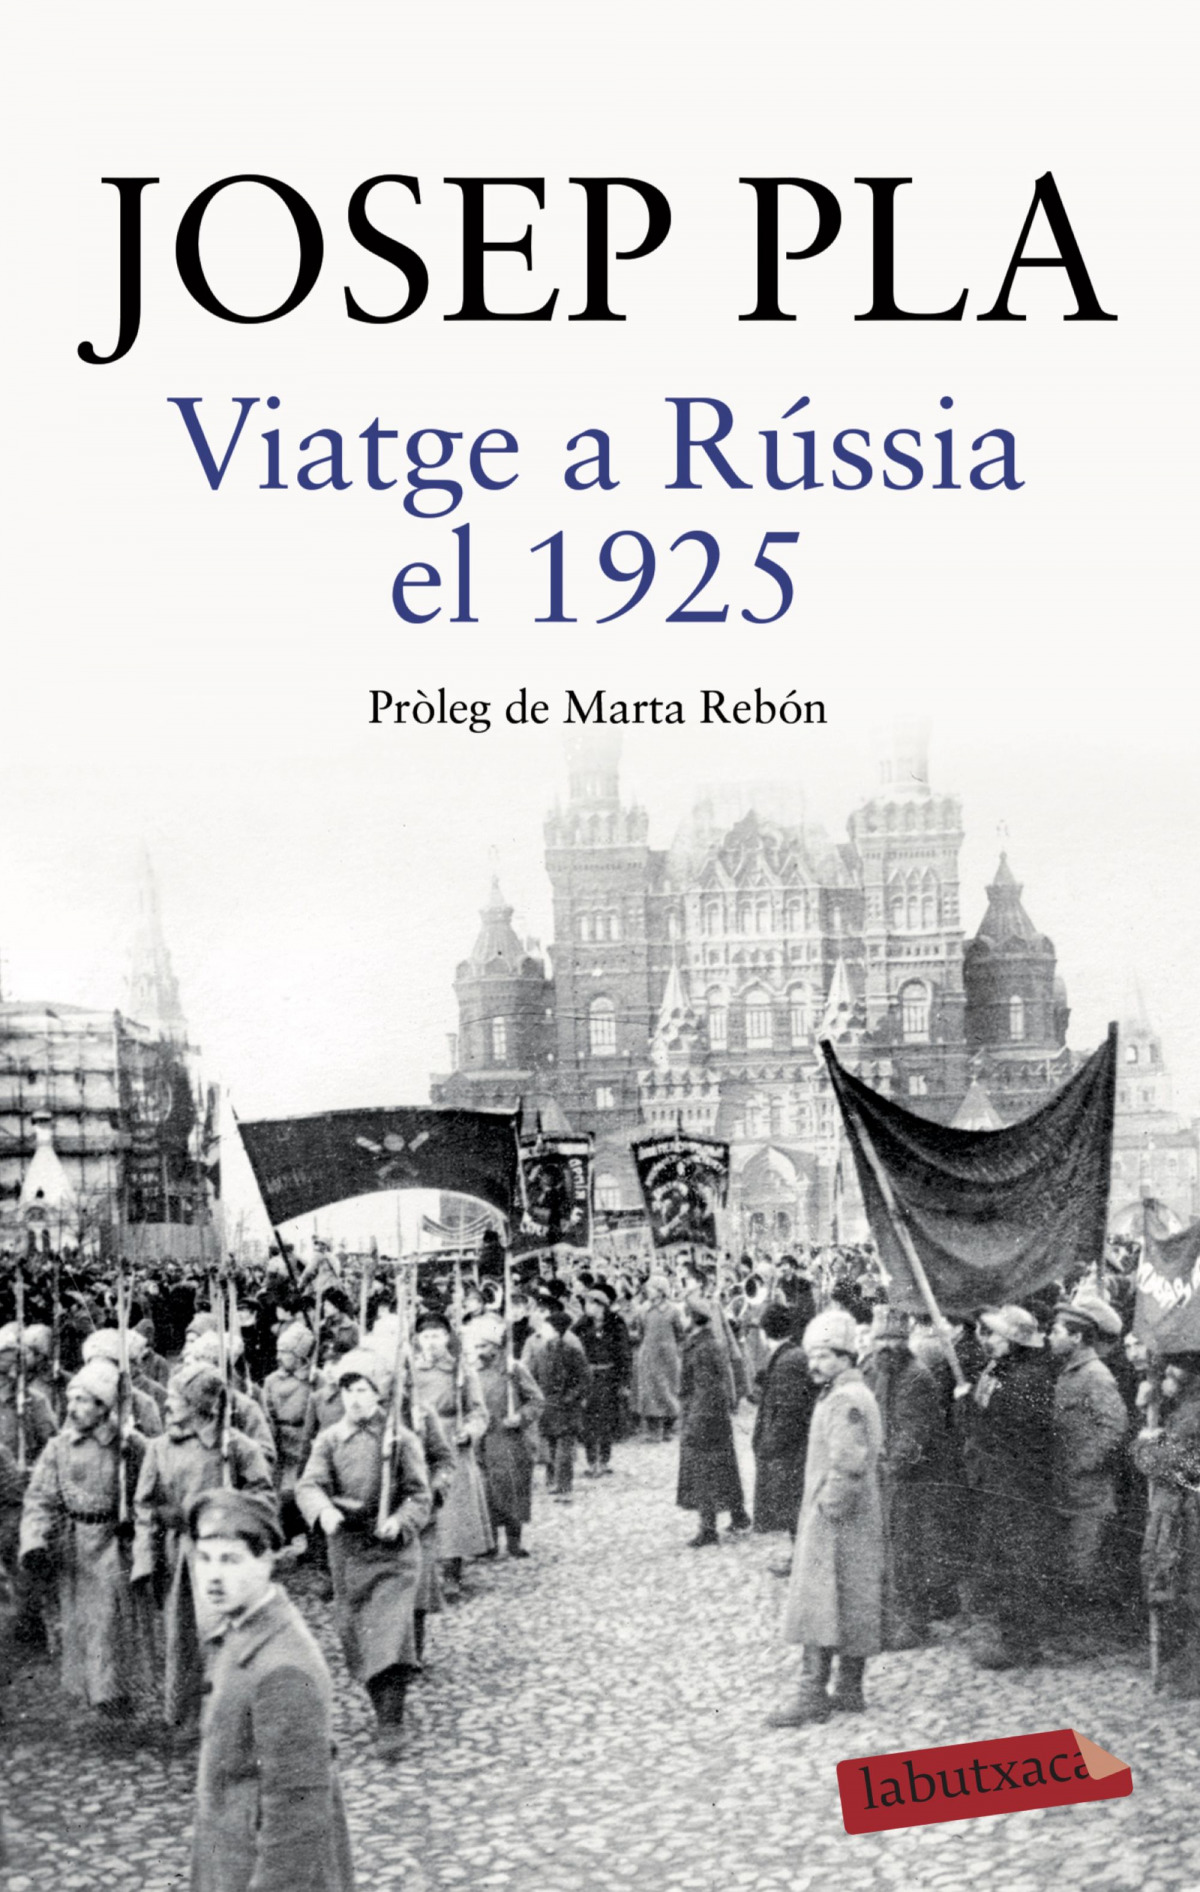 Viatge a Rússia el 1925 Pròleg de Marta Rebón - Pla, Josep